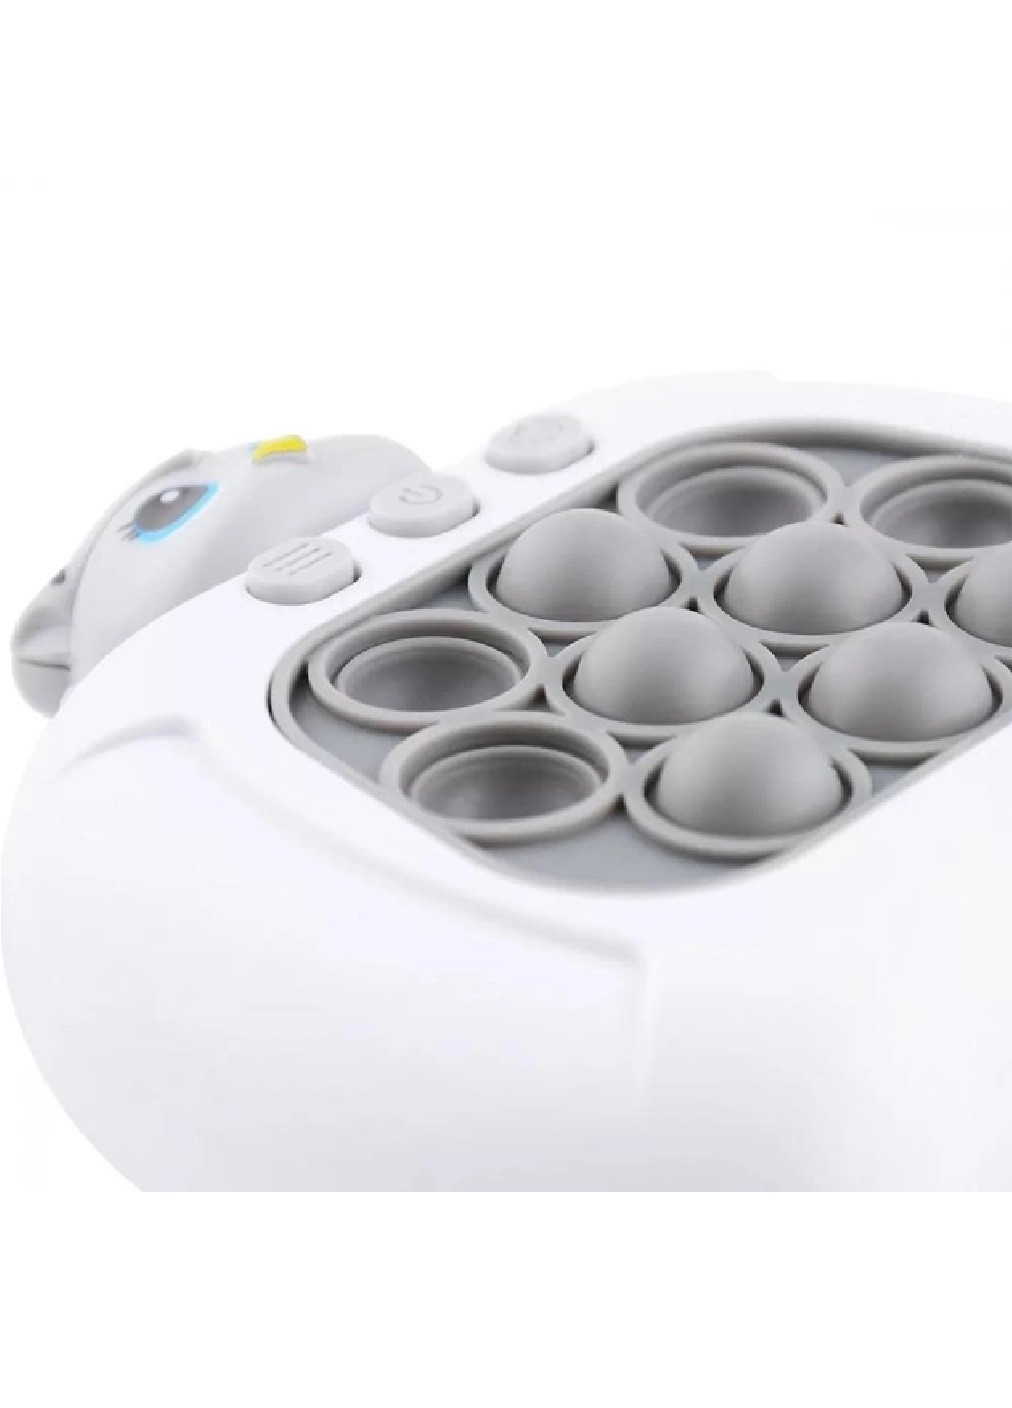 Електронна іграшка консоль головоломка для дітей малюків з ямочками бульбашками на батарейках (475880-Prob) Сова Unbranded (273378363)